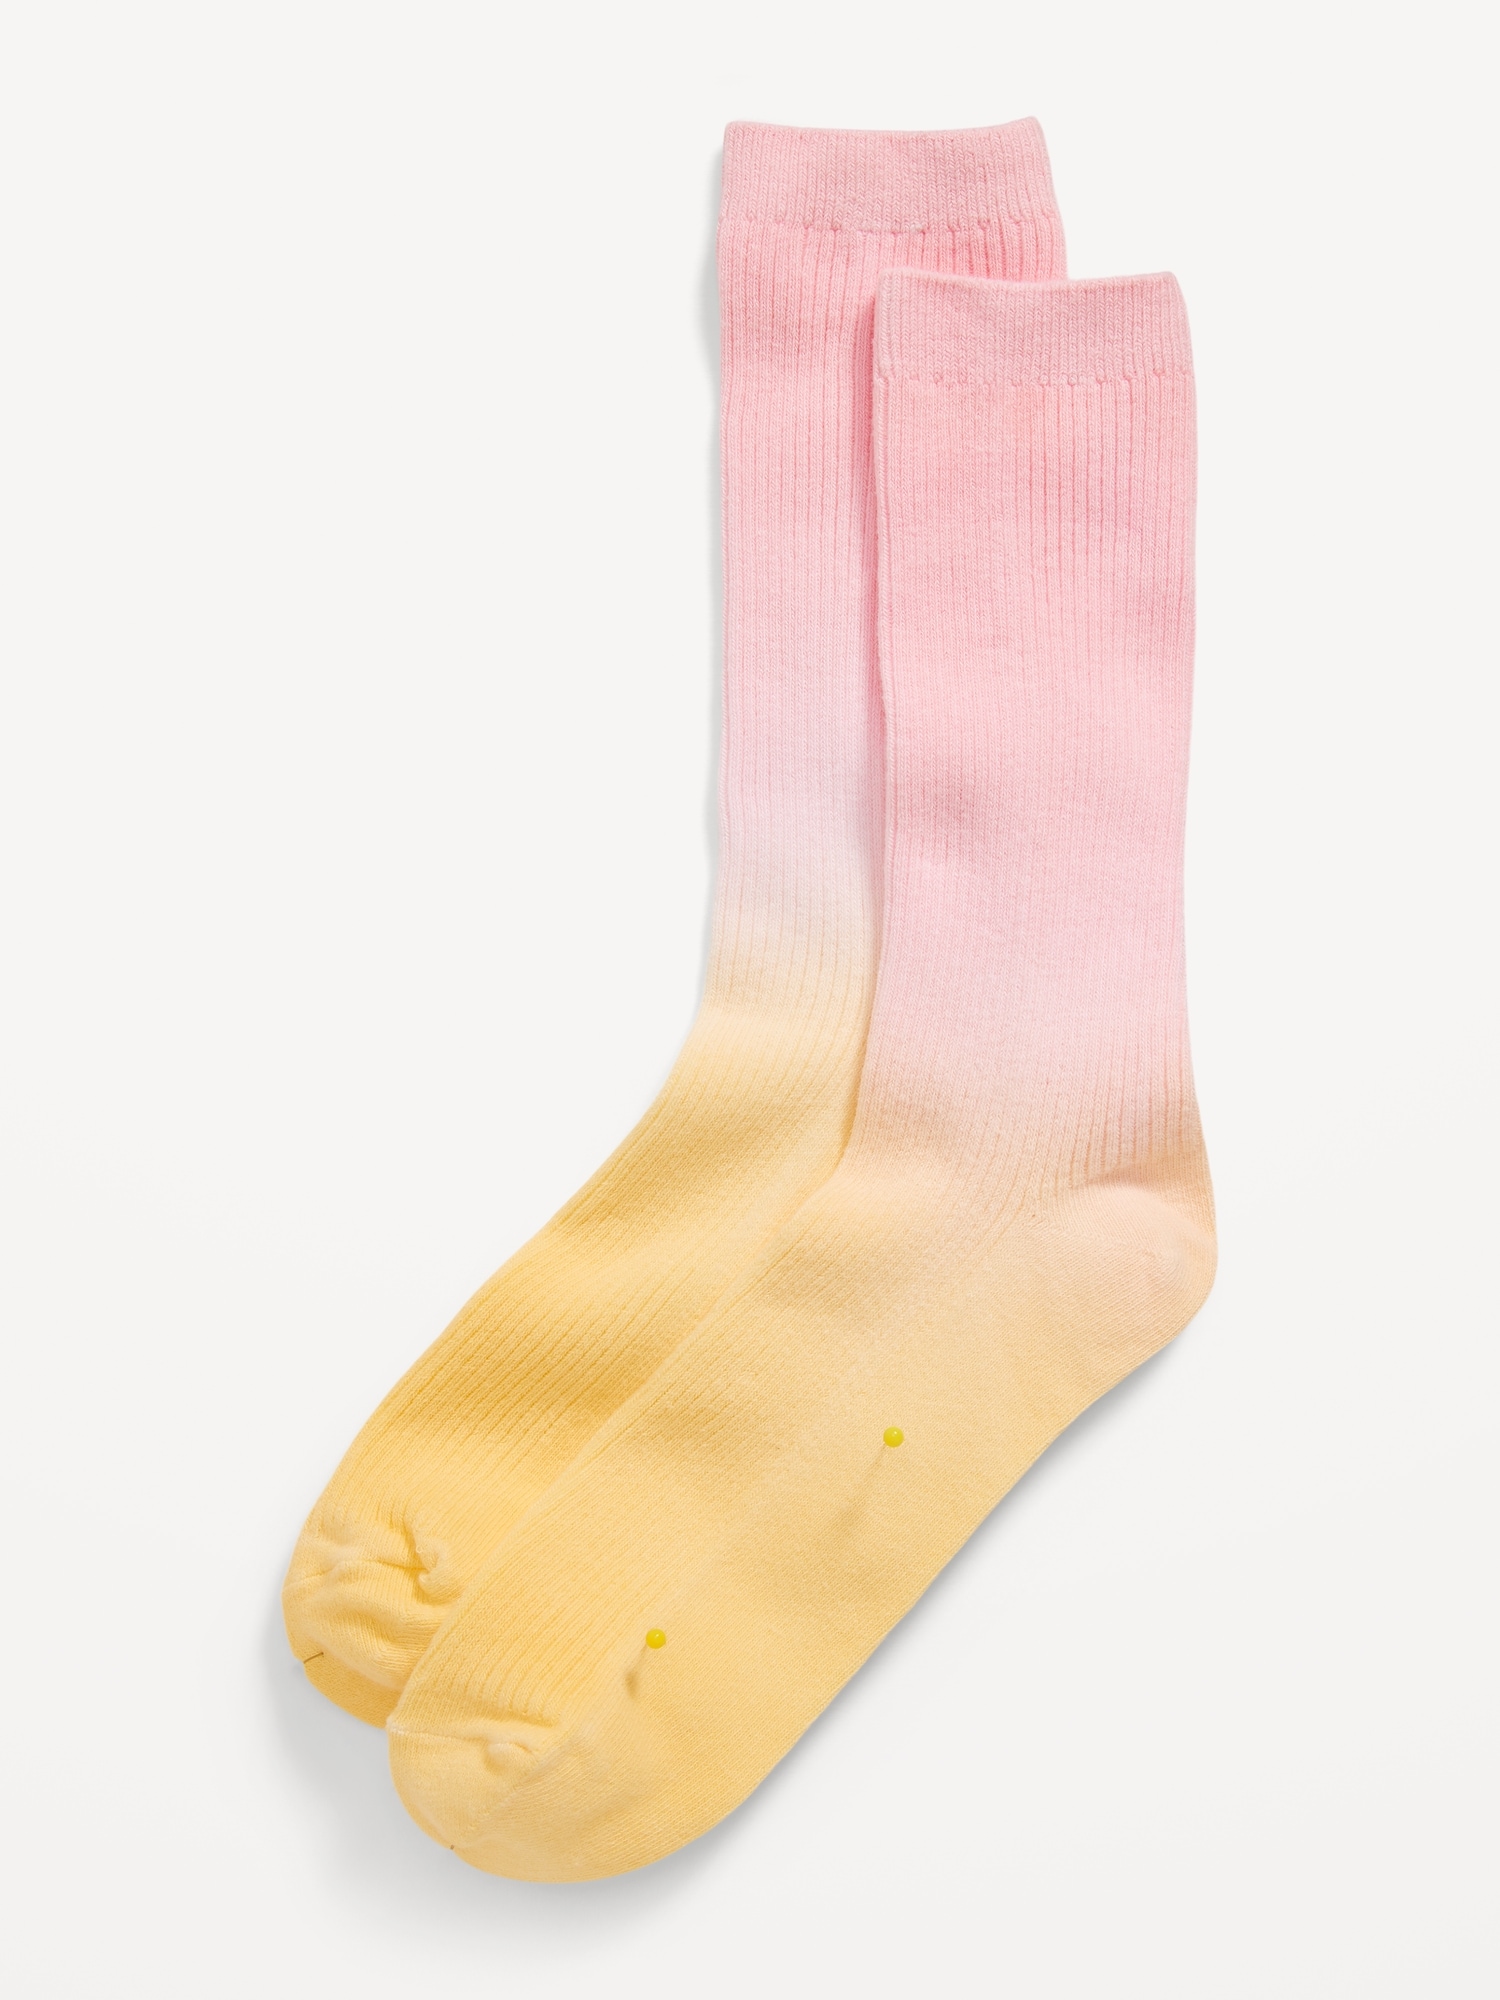 Crew Socks for Women